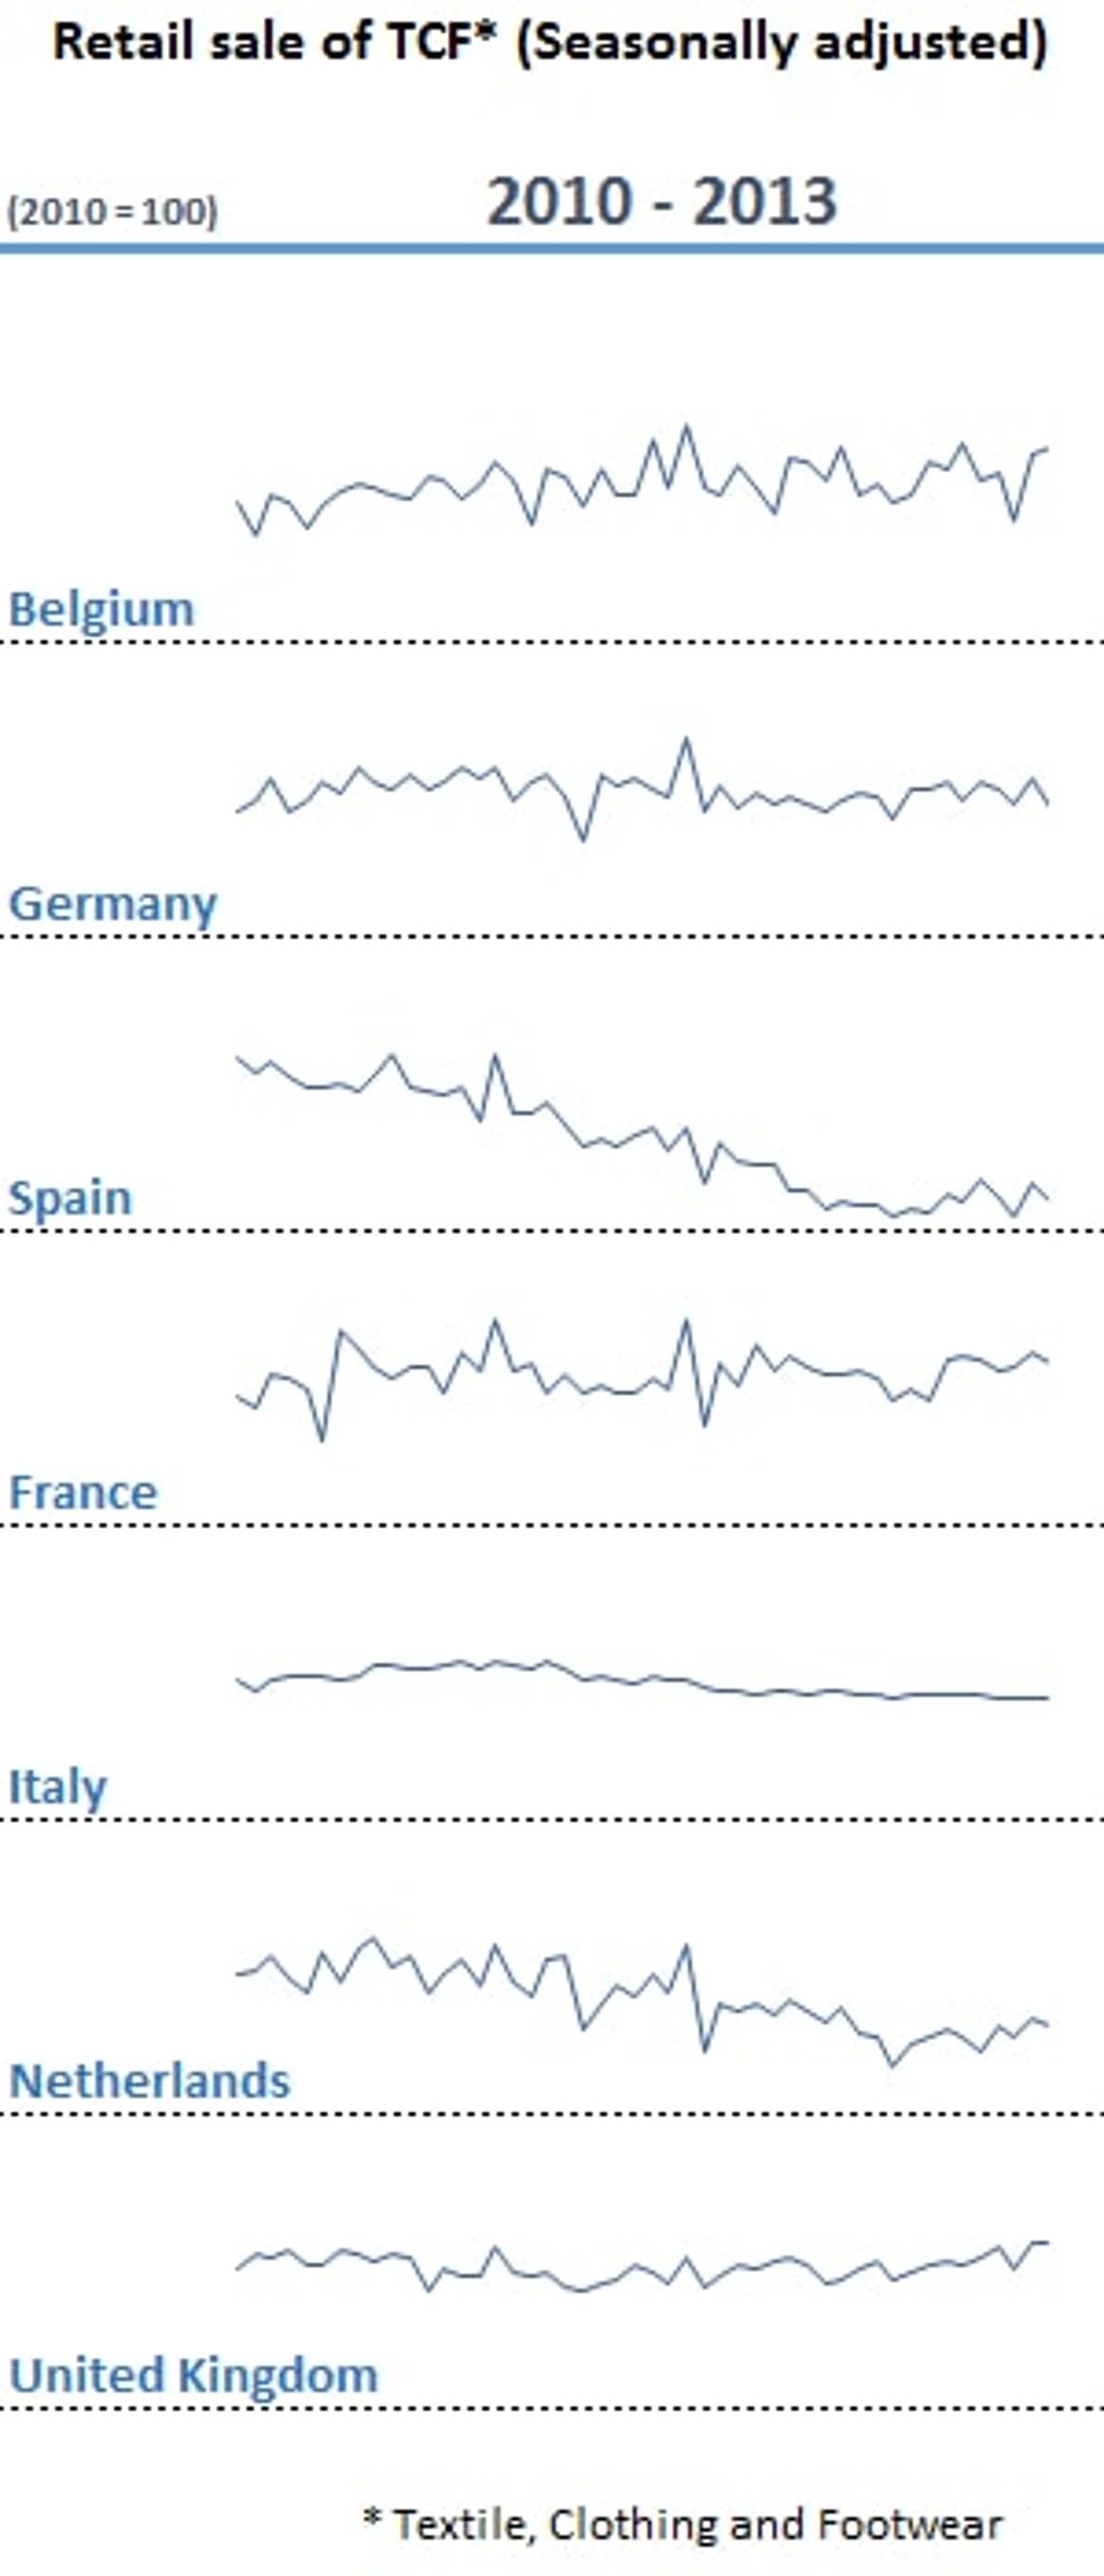 Leichte Erholung für europäischen Einzelhandel im 2. HJ 2013